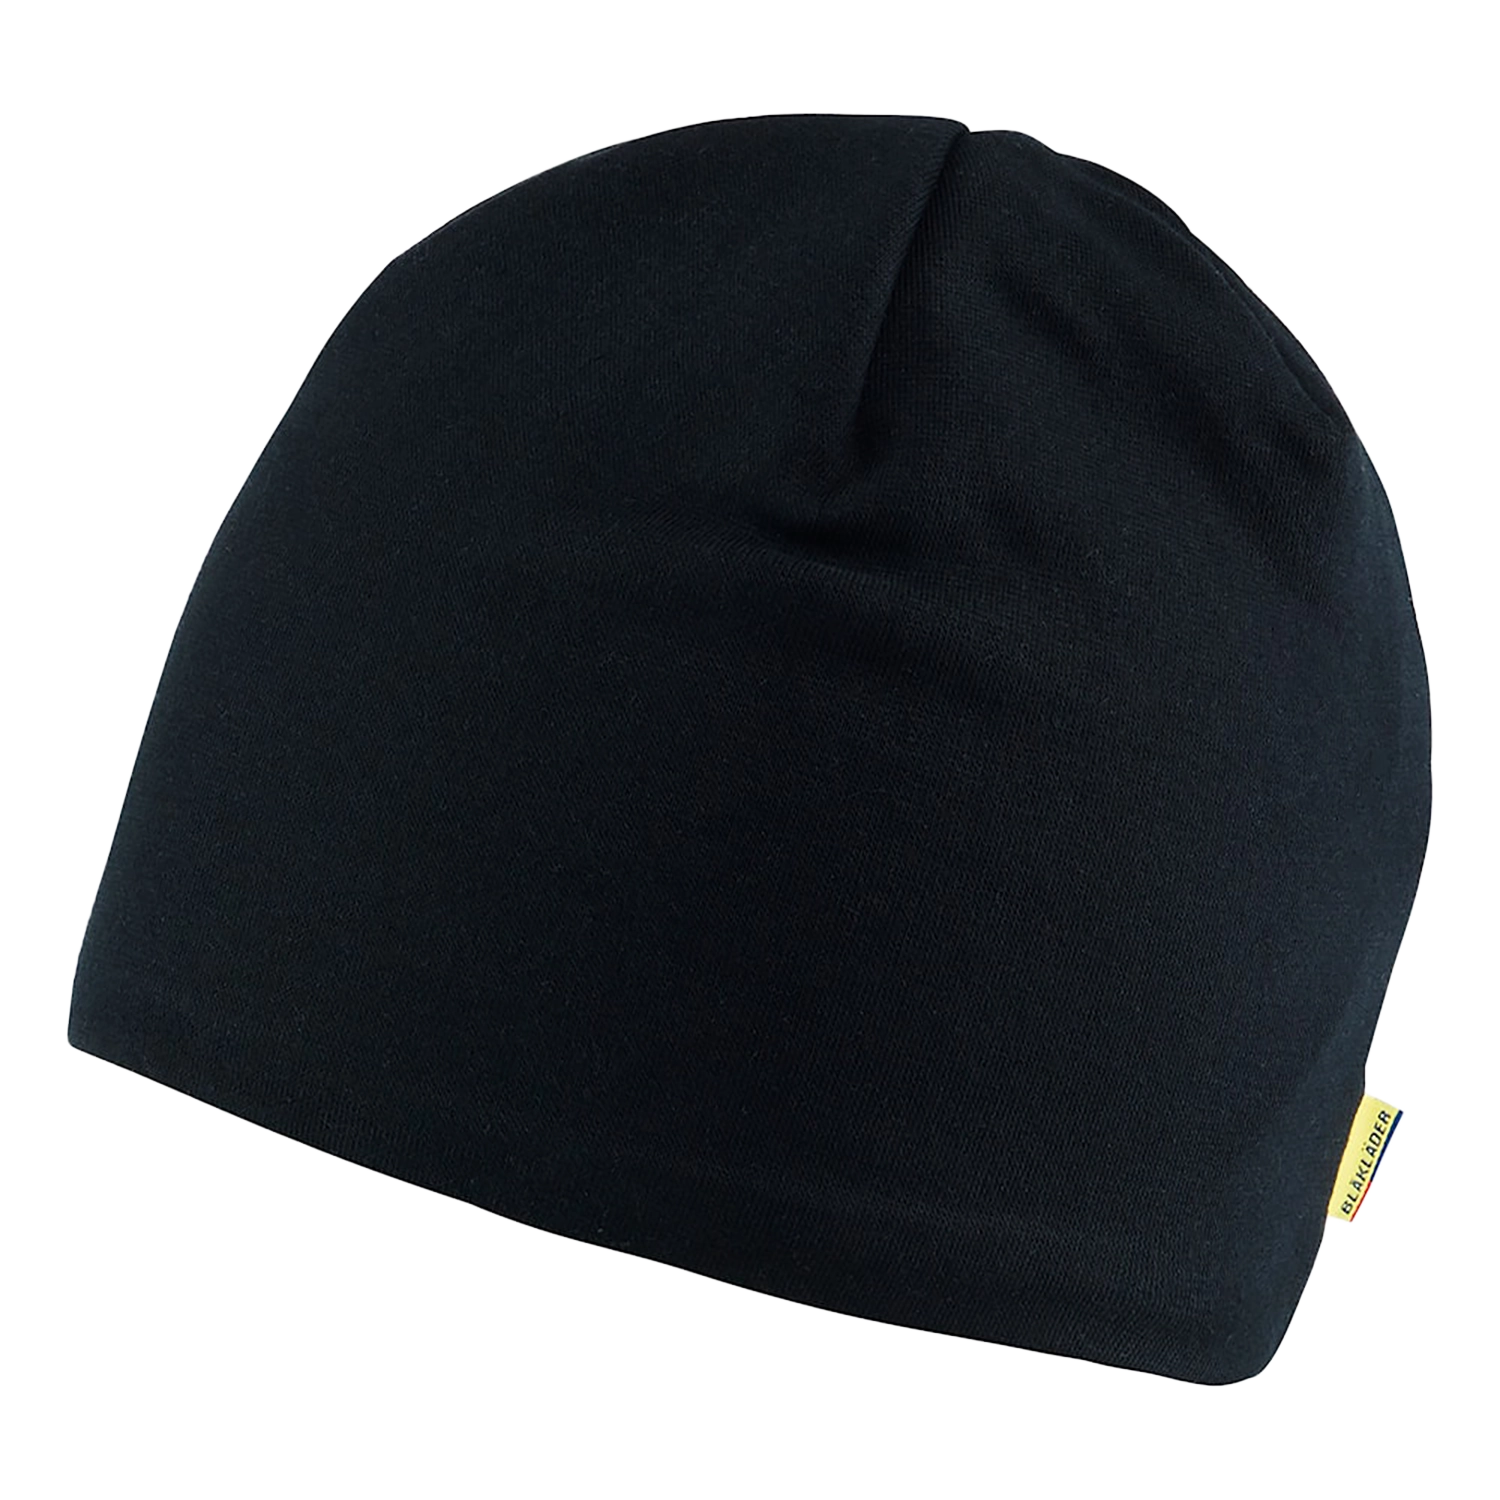 Bonnet 2003/0000/9900 - noir - taille unique